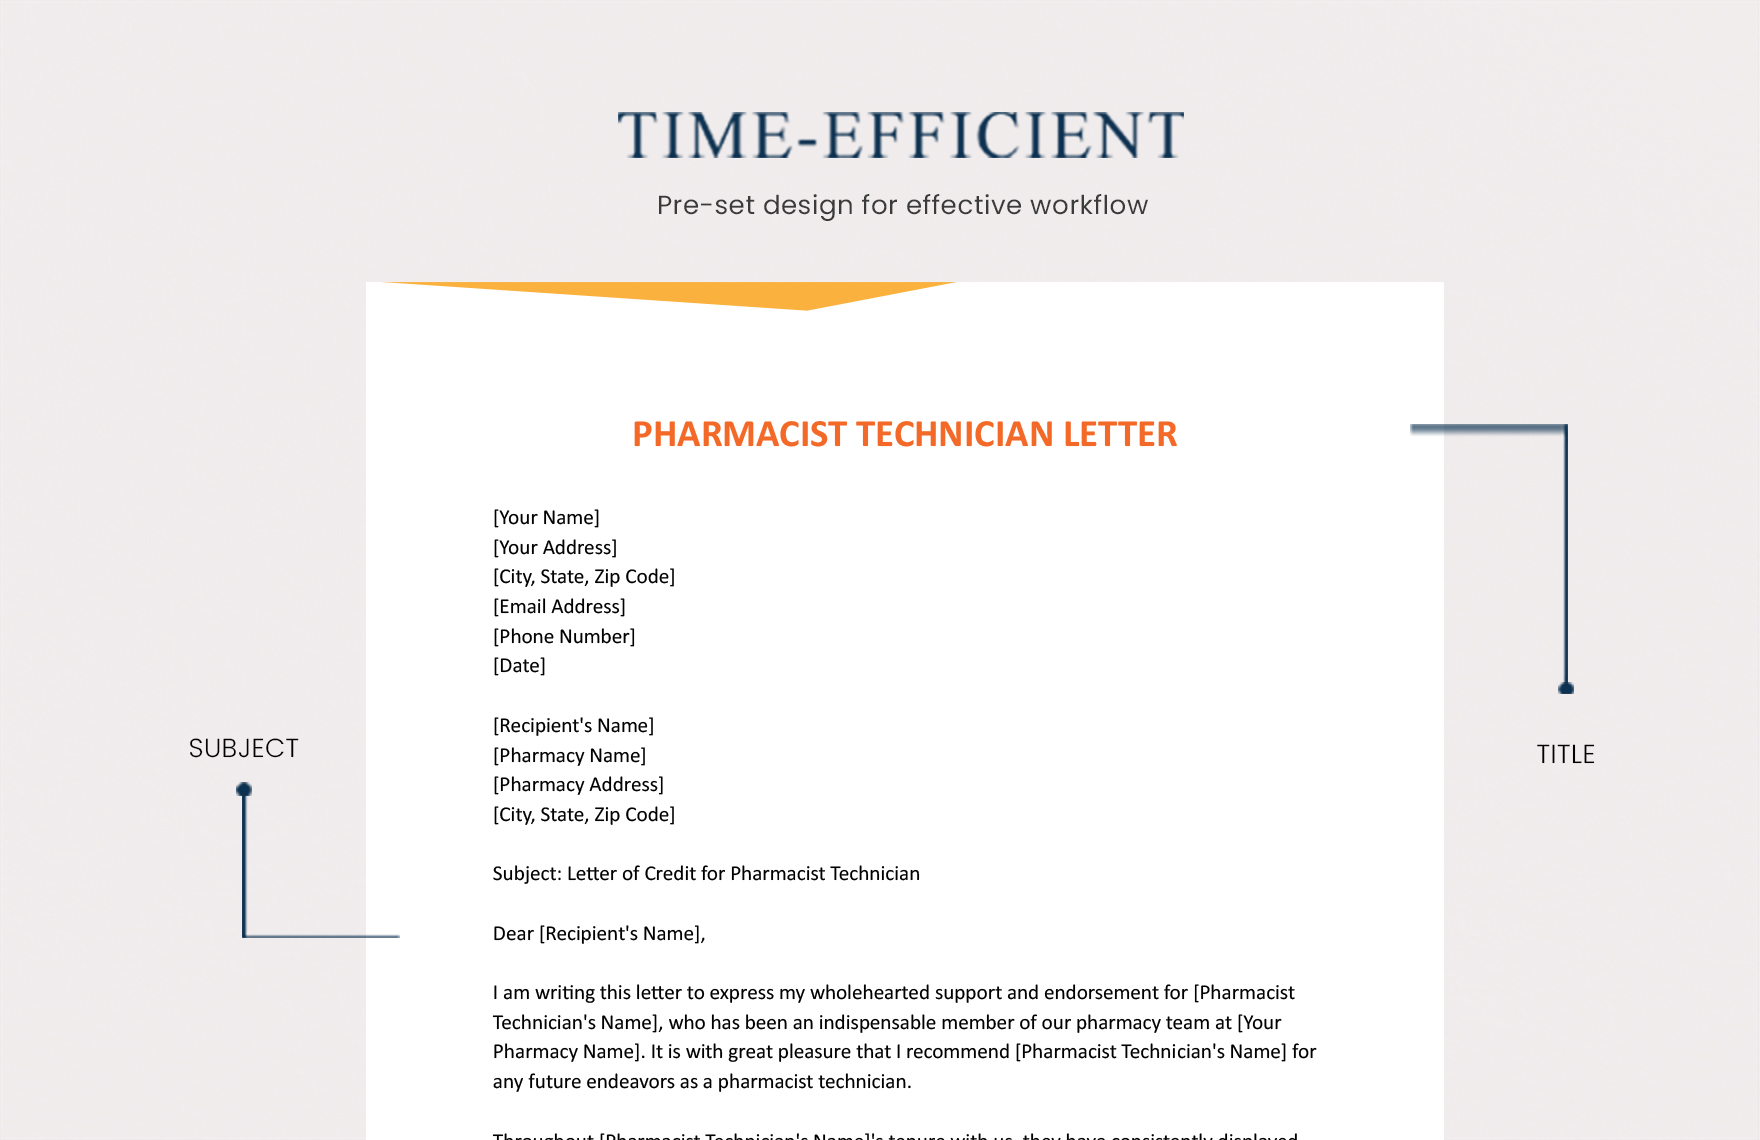 Pharmacist Technician Letter